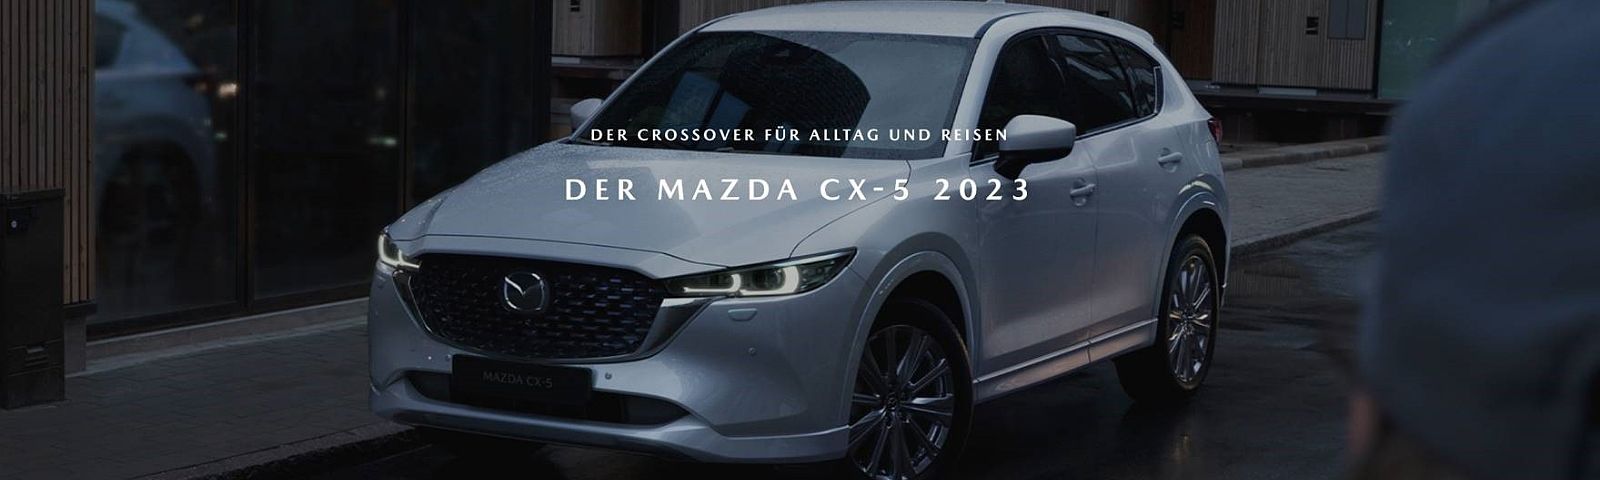 Der Mazda CX-5